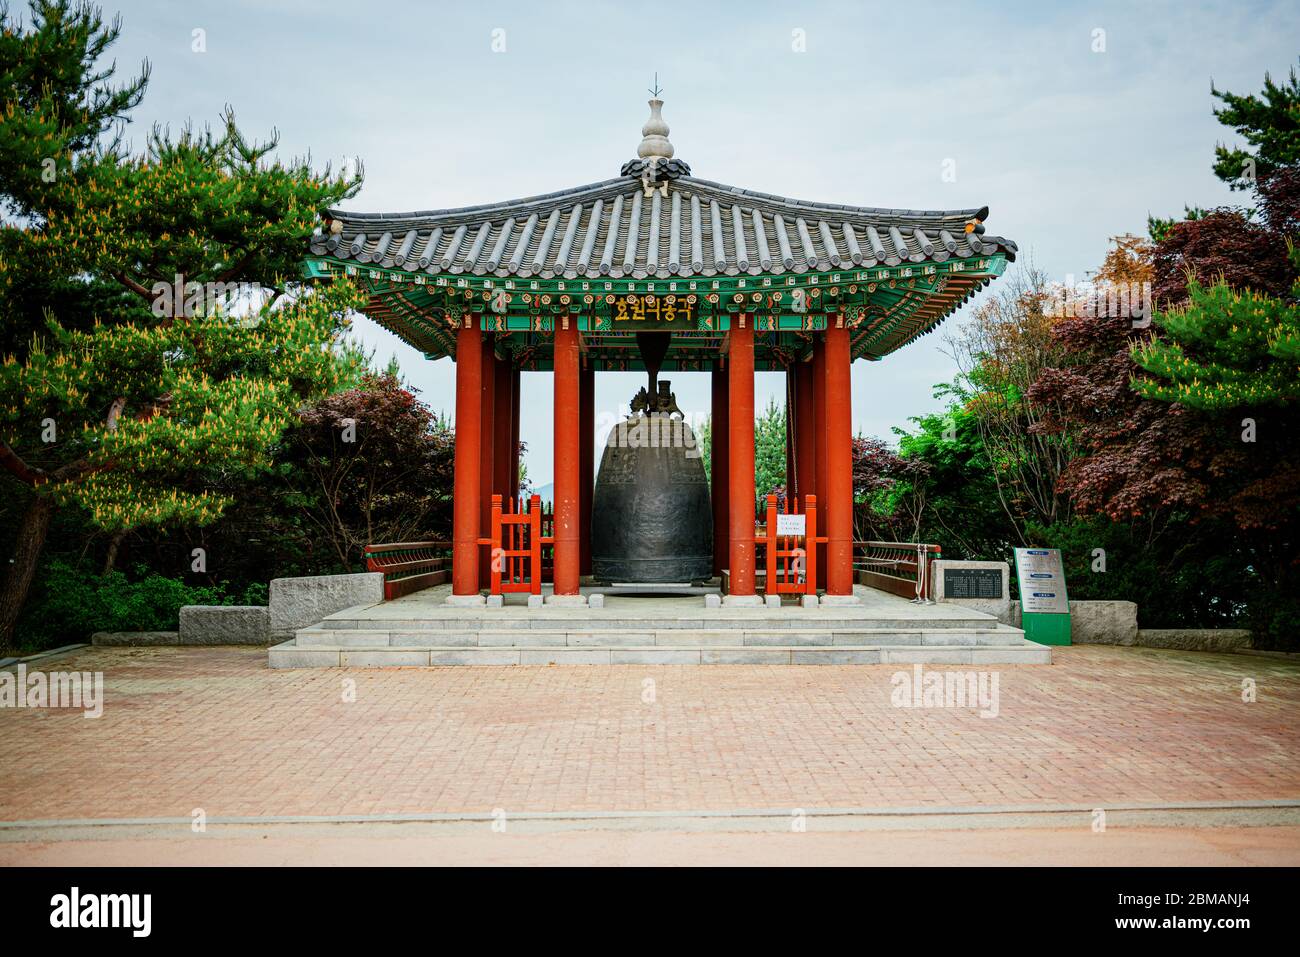 Fortezza di Hwaseong, Corea del Sud - 07 MAGGIO 2020: La fortezza di Hwaseong si trova a Suwon, appena a sud di Seoul. Foto Stock